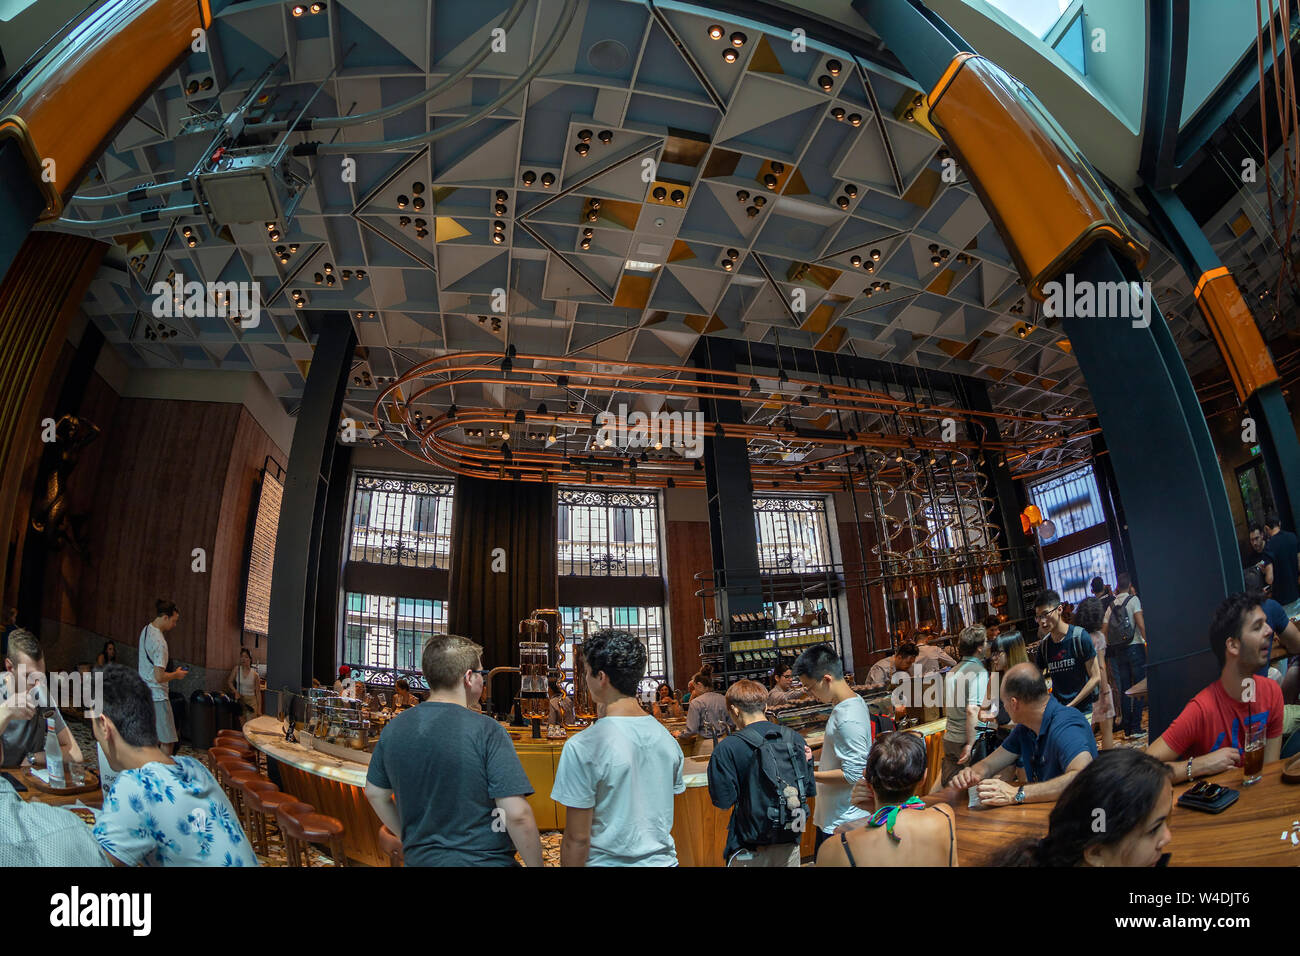 MILAN, ITALIE - 29 juin 2019 : grand angle de visualisation de l'intérieur du concept store Starbucks à Milan, savoir que Starbucks torréfaction du Réserve. Banque D'Images